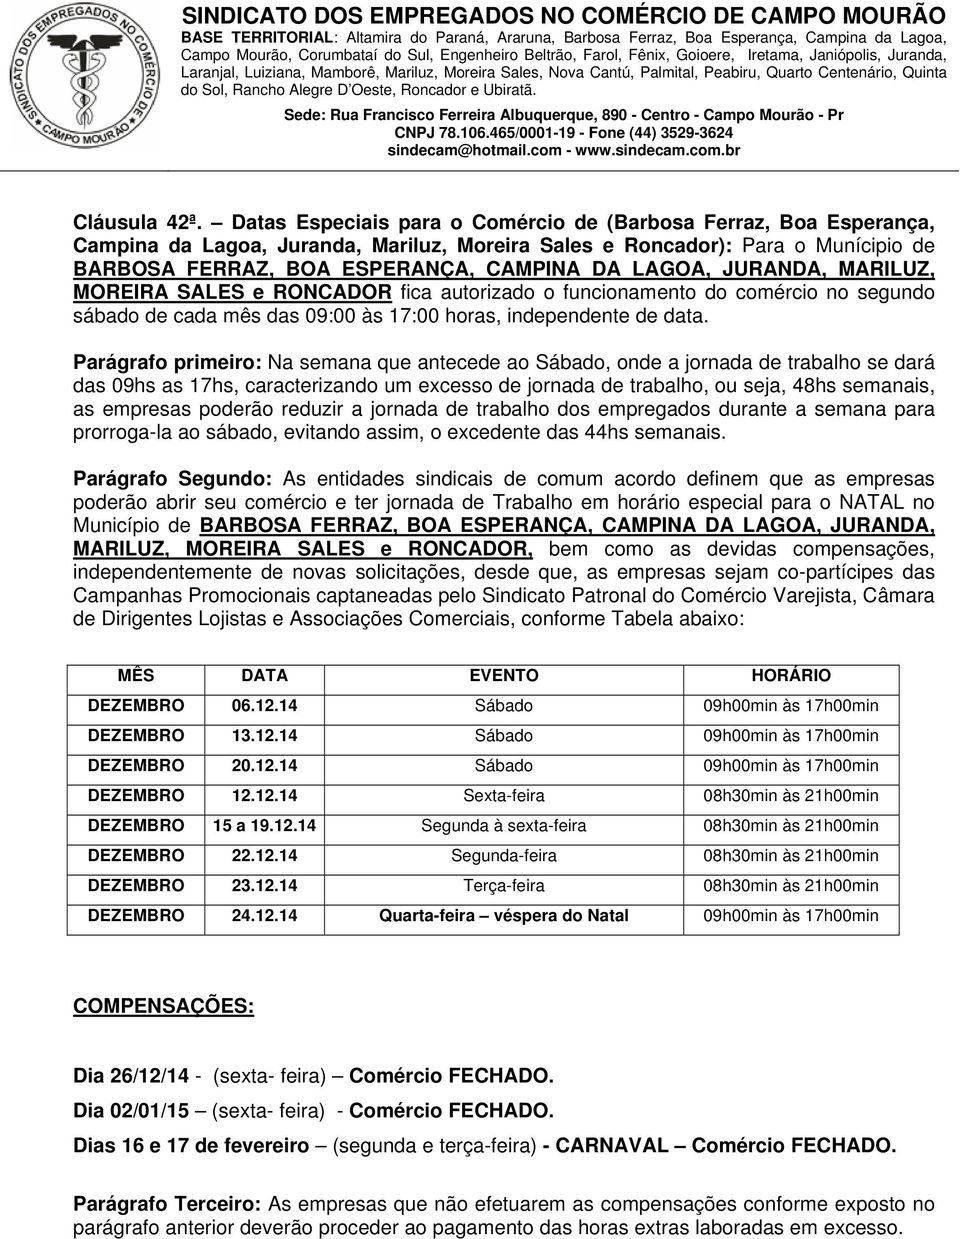 JURANDA, MARILUZ, MOREIRA SALES e RONCADOR fica autorizado o funcionamento do comércio no segundo sábado de cada mês das 09:00 às 17:00 horas, independente de data.